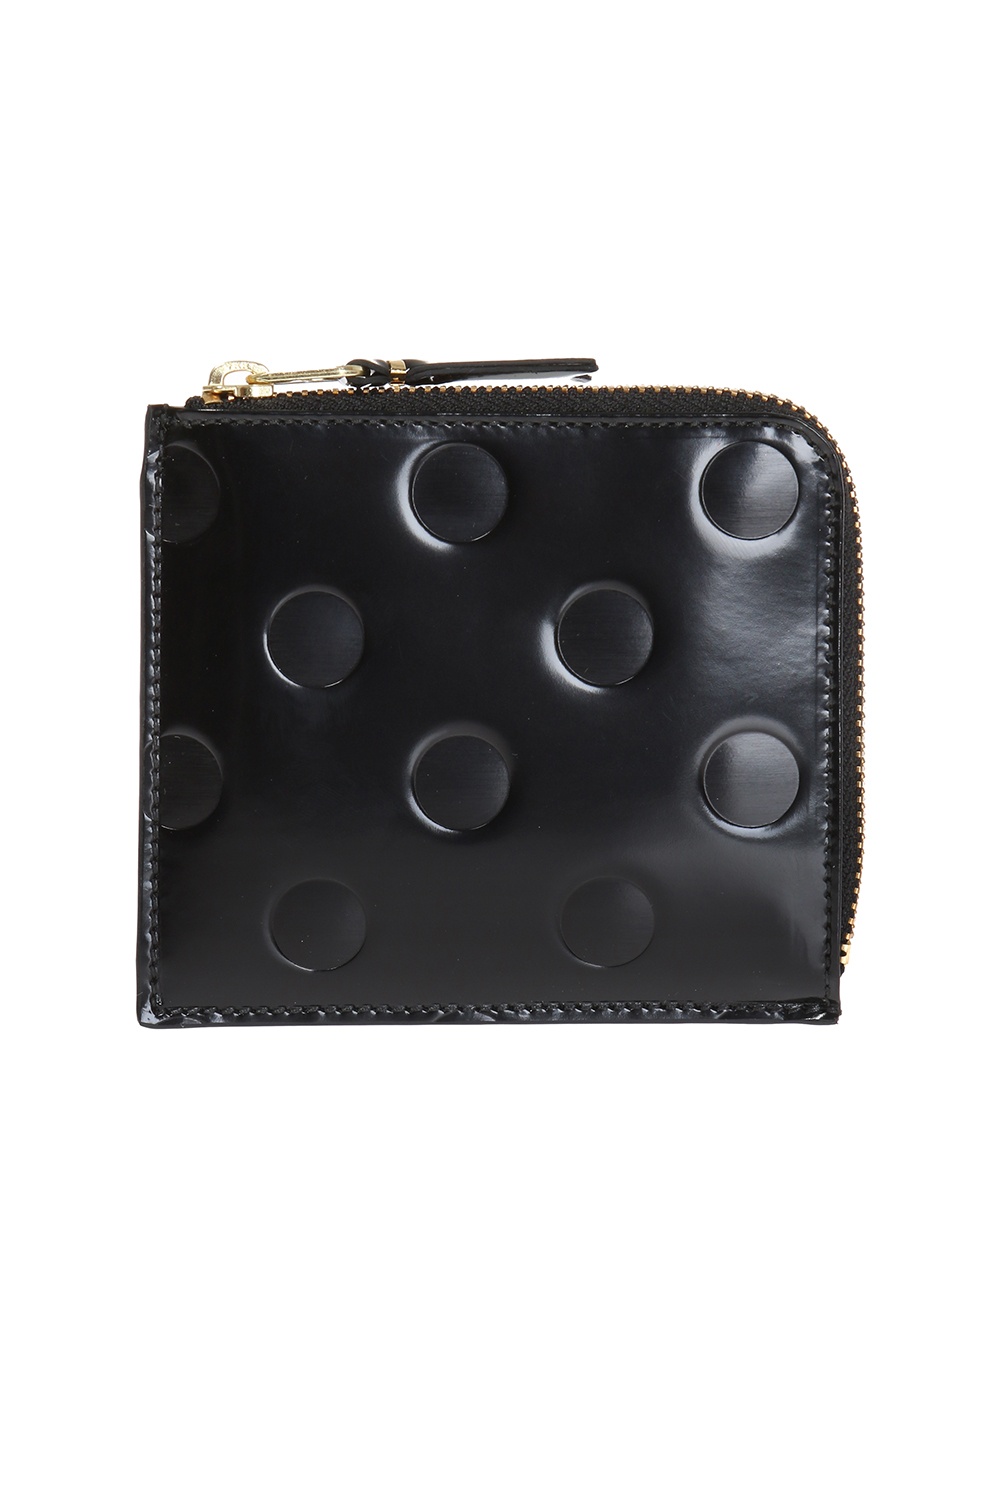 Brown Leather wallet Comme des Garçons - Vitkac Canada